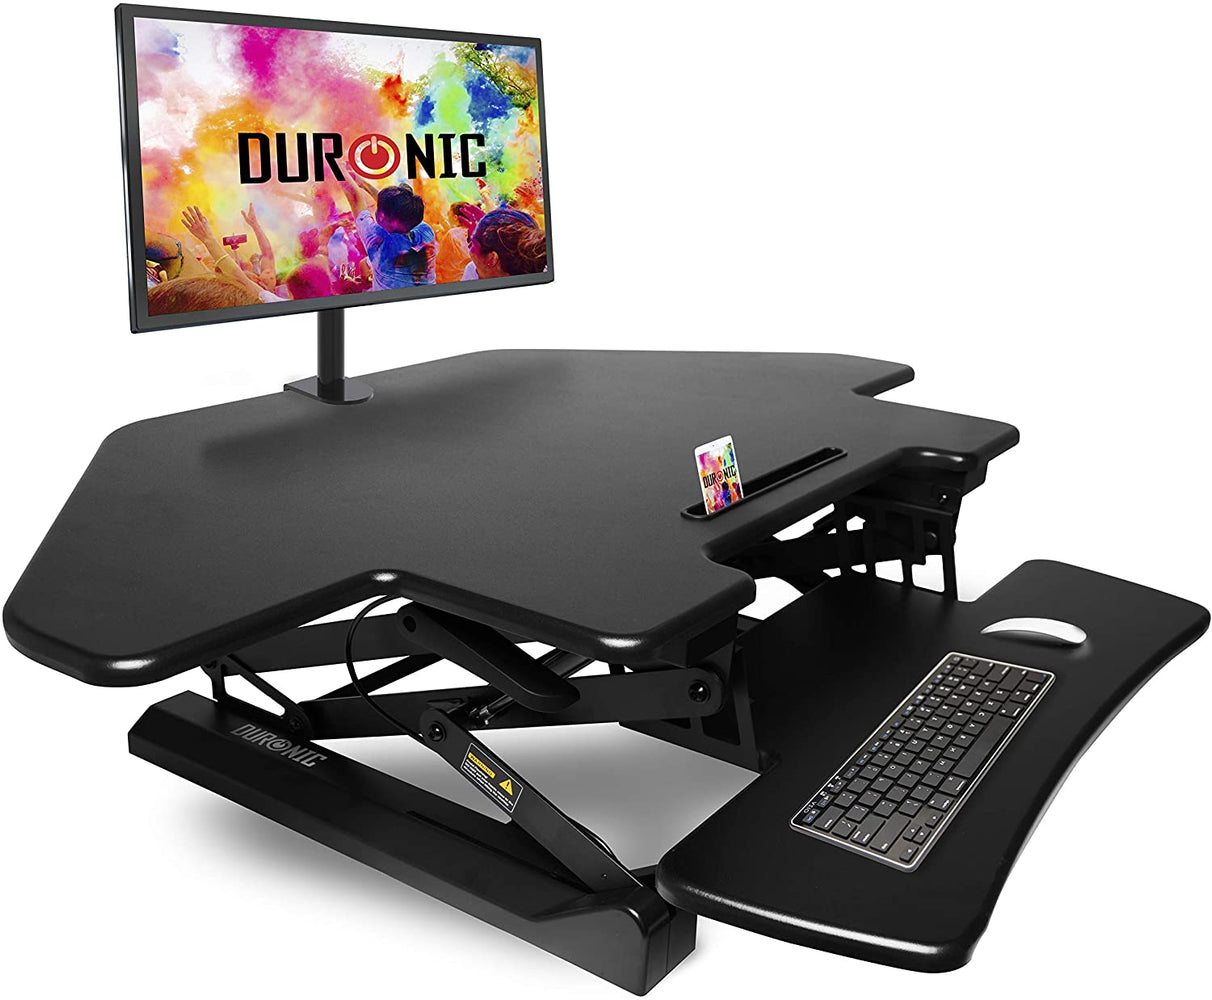 Duronic DM05D5 Postazione da lavoro per computer con ampia piattaforma 100 cm scrivania ufficio per pc monitor tastiera – altezza regolabile da 15 a 50 cm – compatibile con supporti monitor